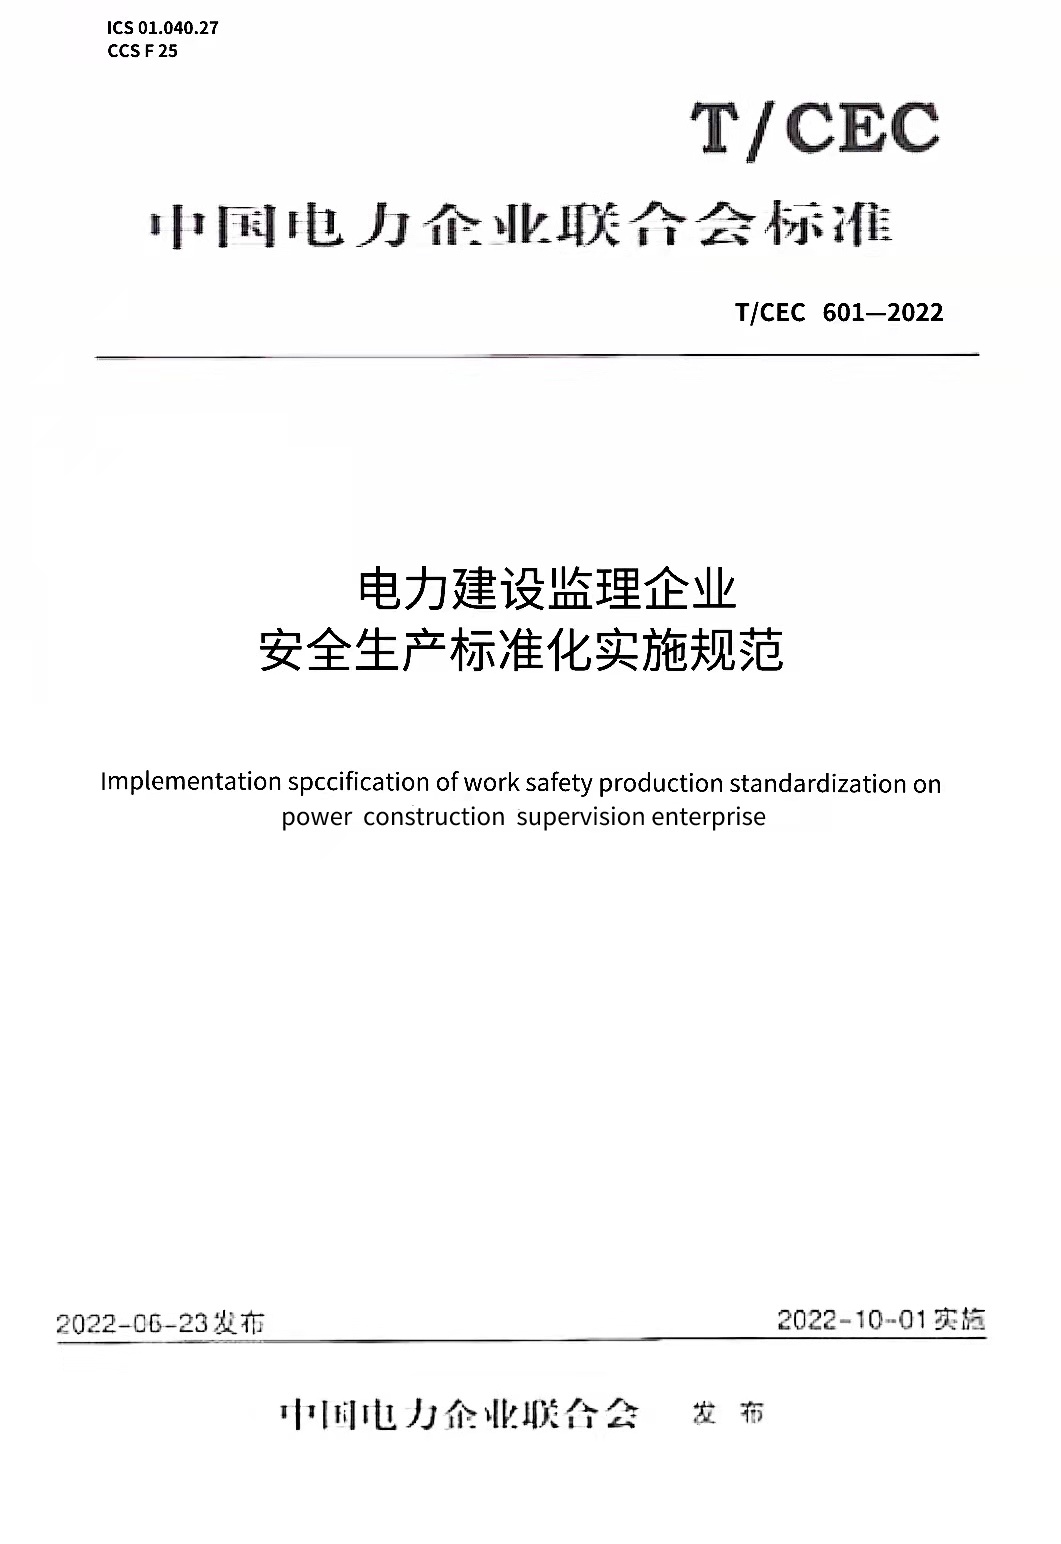 【按需印刷】T/CEC 601-2022 电力建设监理企业安全生产标准化实施规范